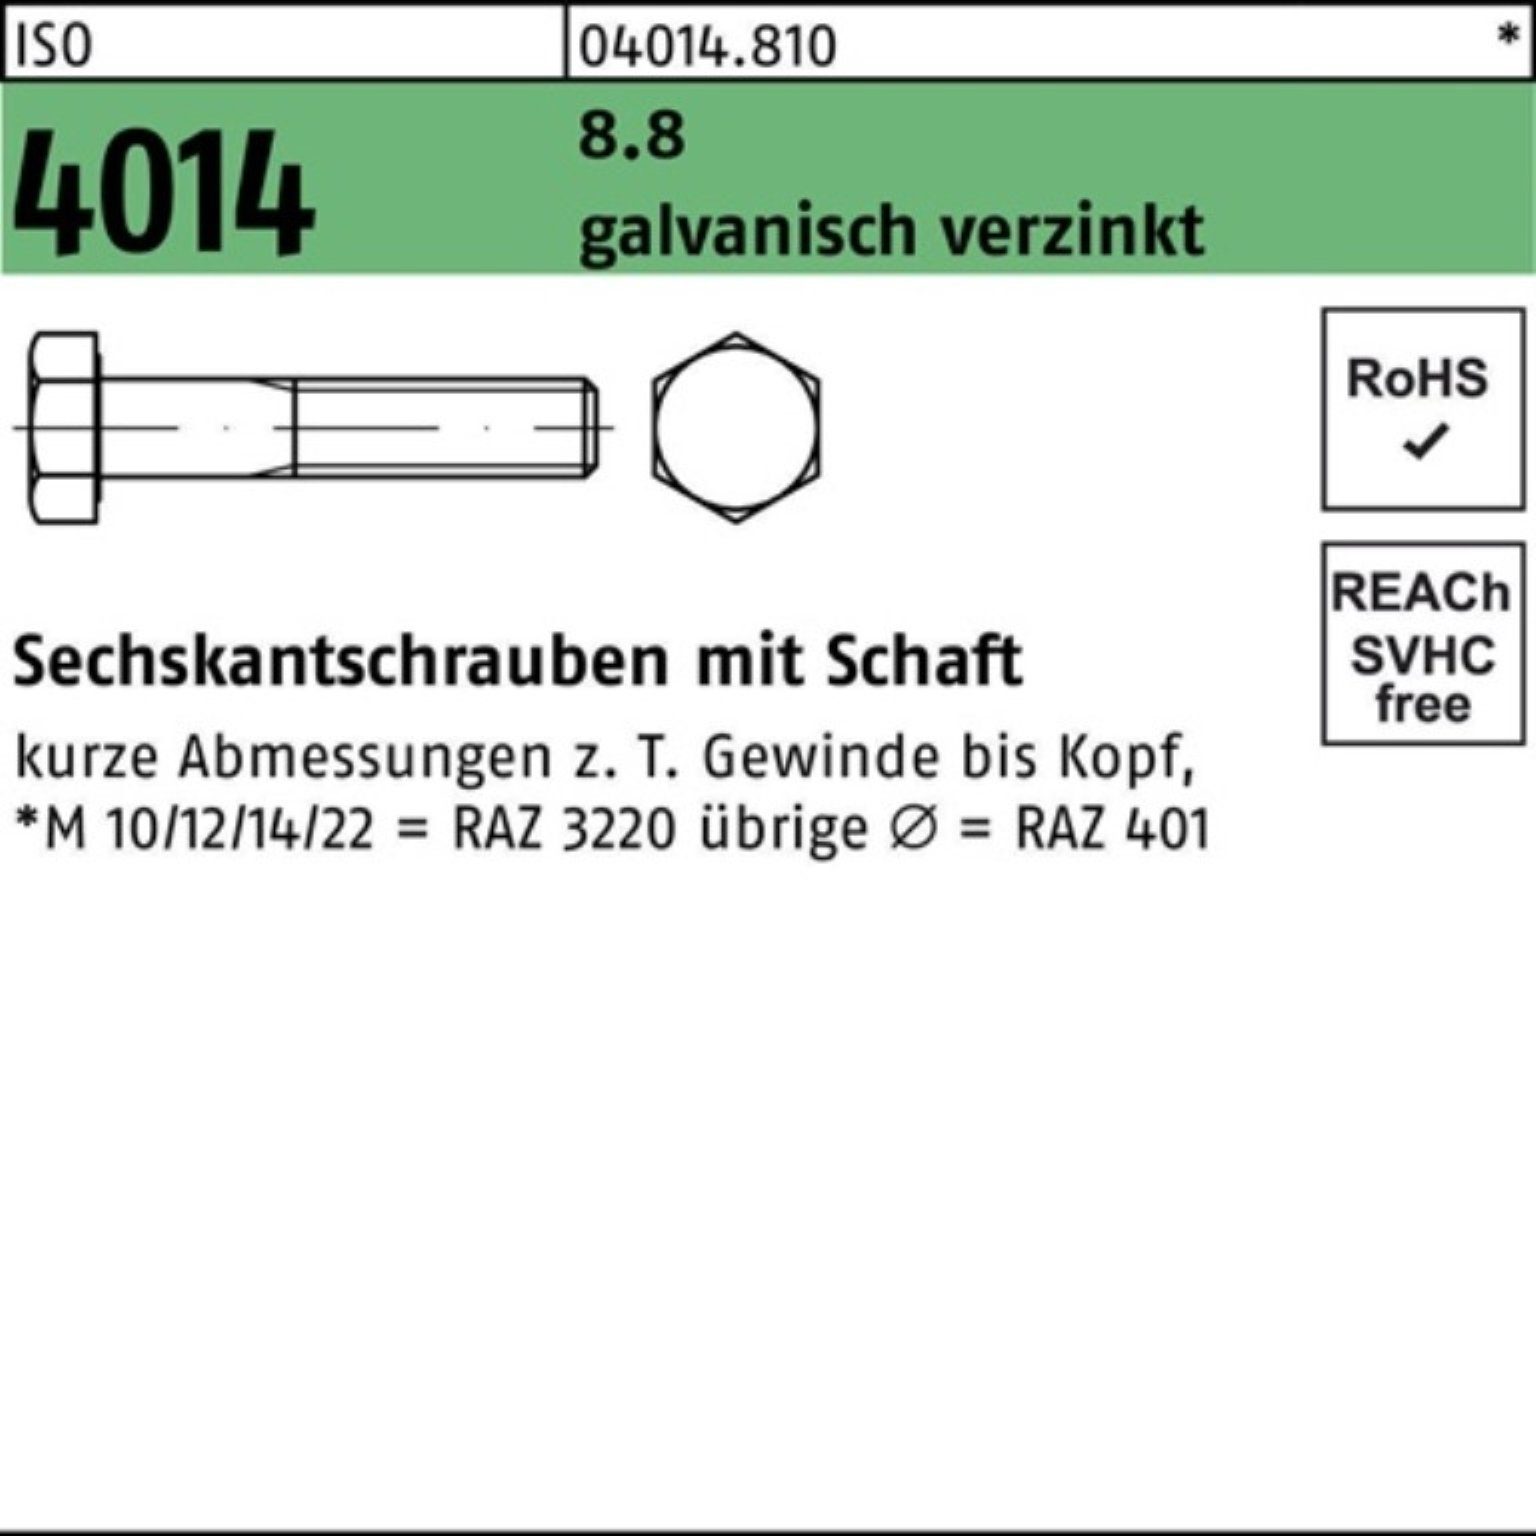 Schaft Sechskantschraube 1 100er 8.8 Bufab Pack galv.verz. 190 Sechskantschraube 4014 ISO M24x